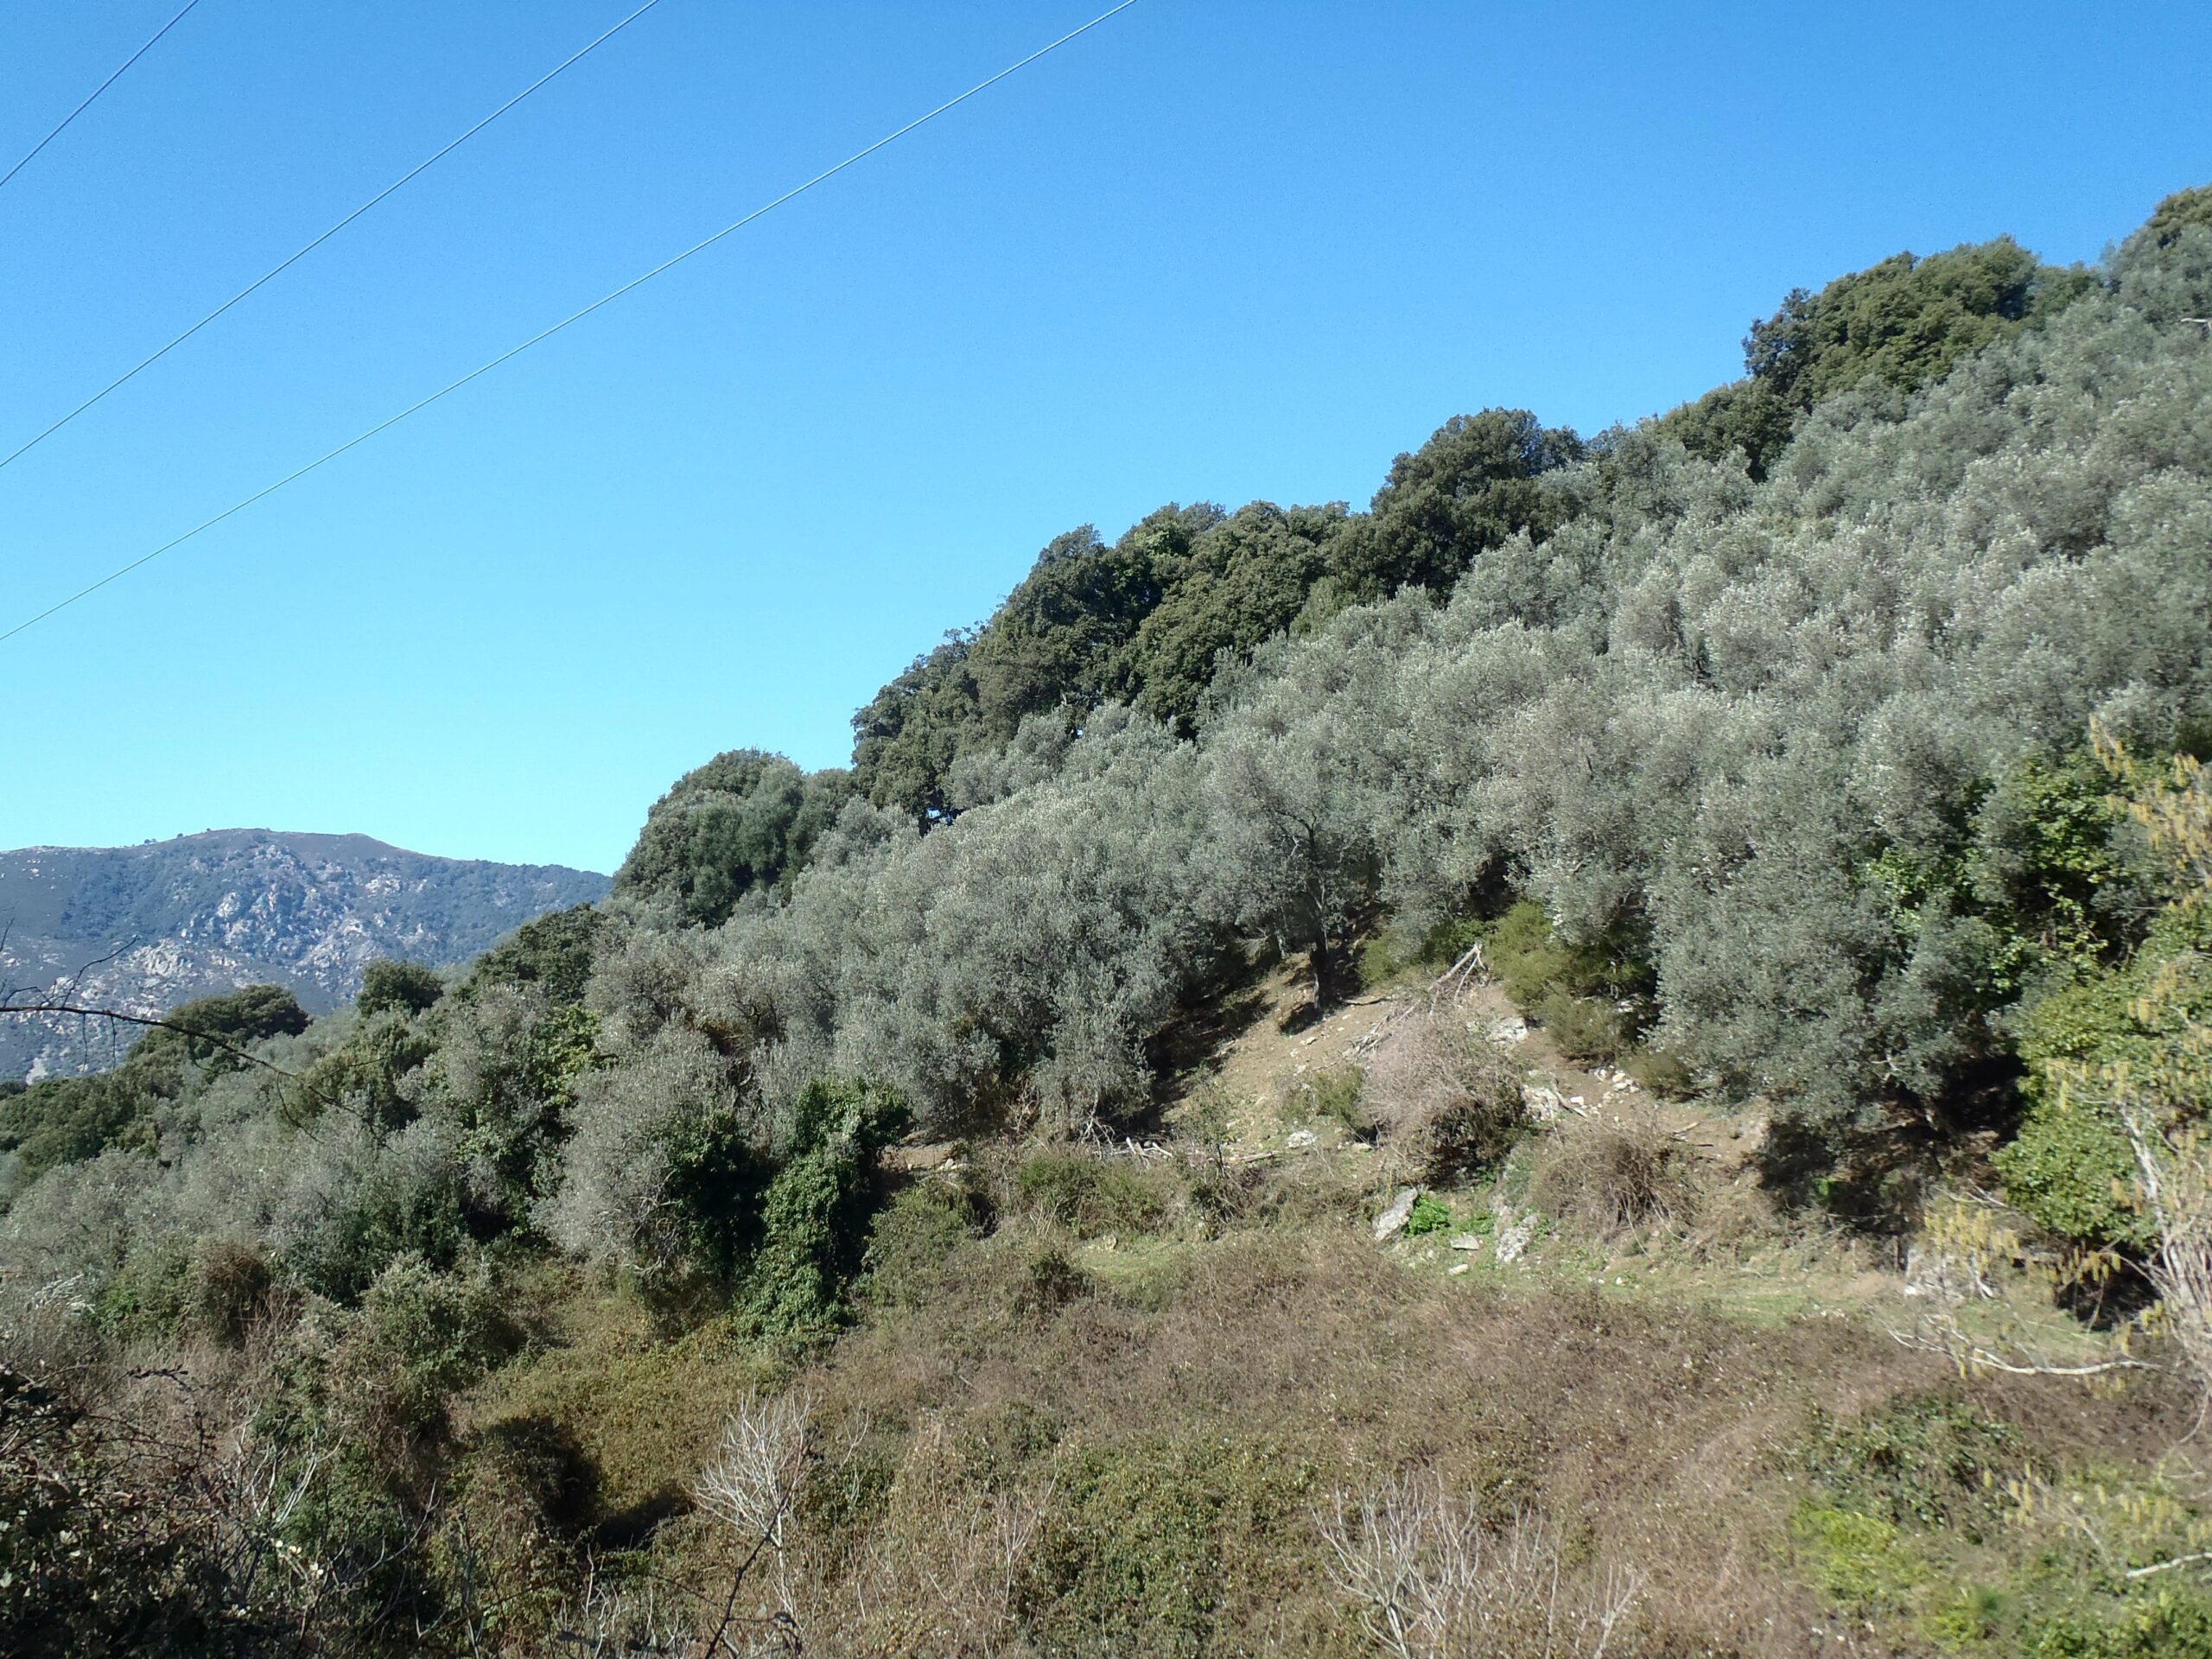 De beaux vergers d'oliviers viennent enrichir la palette végétale des versants boisés dans la partie basse de l'ensemble, où l'altitude et le climat leur sont favorables.